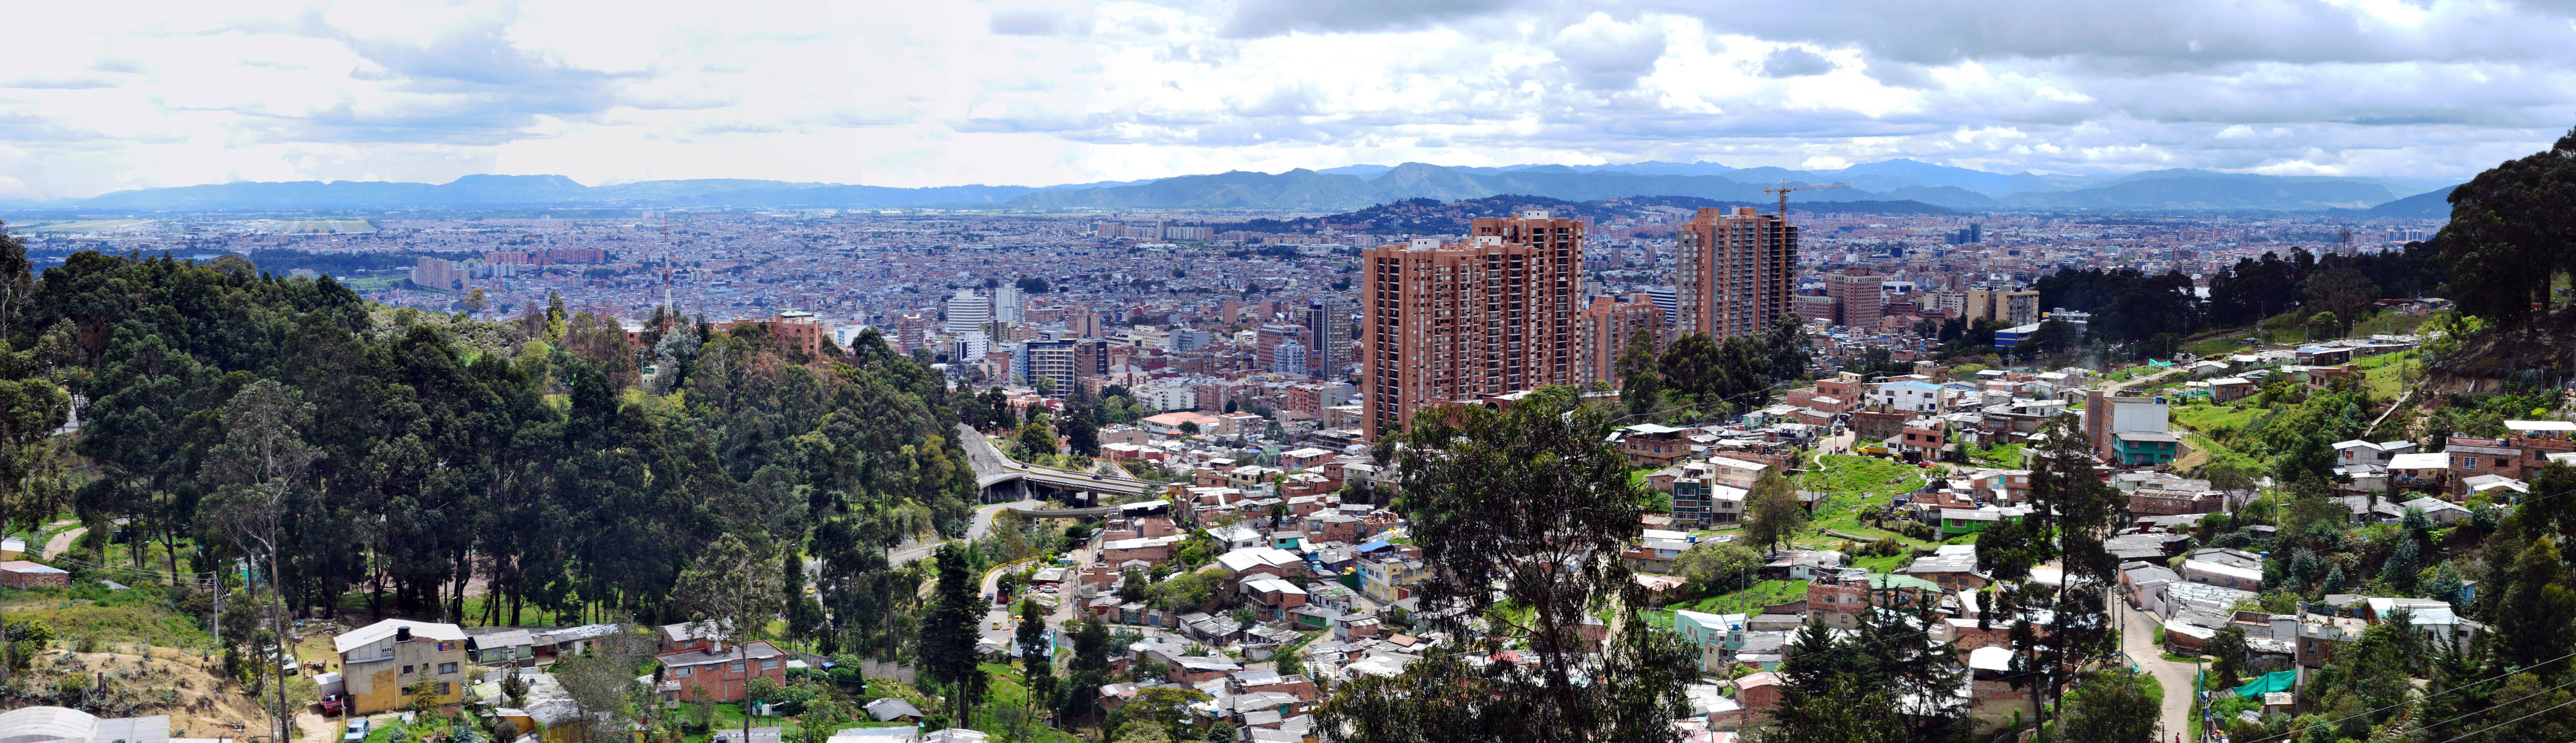 Blick auf die kolumbianische Hauptstadt Bogotá